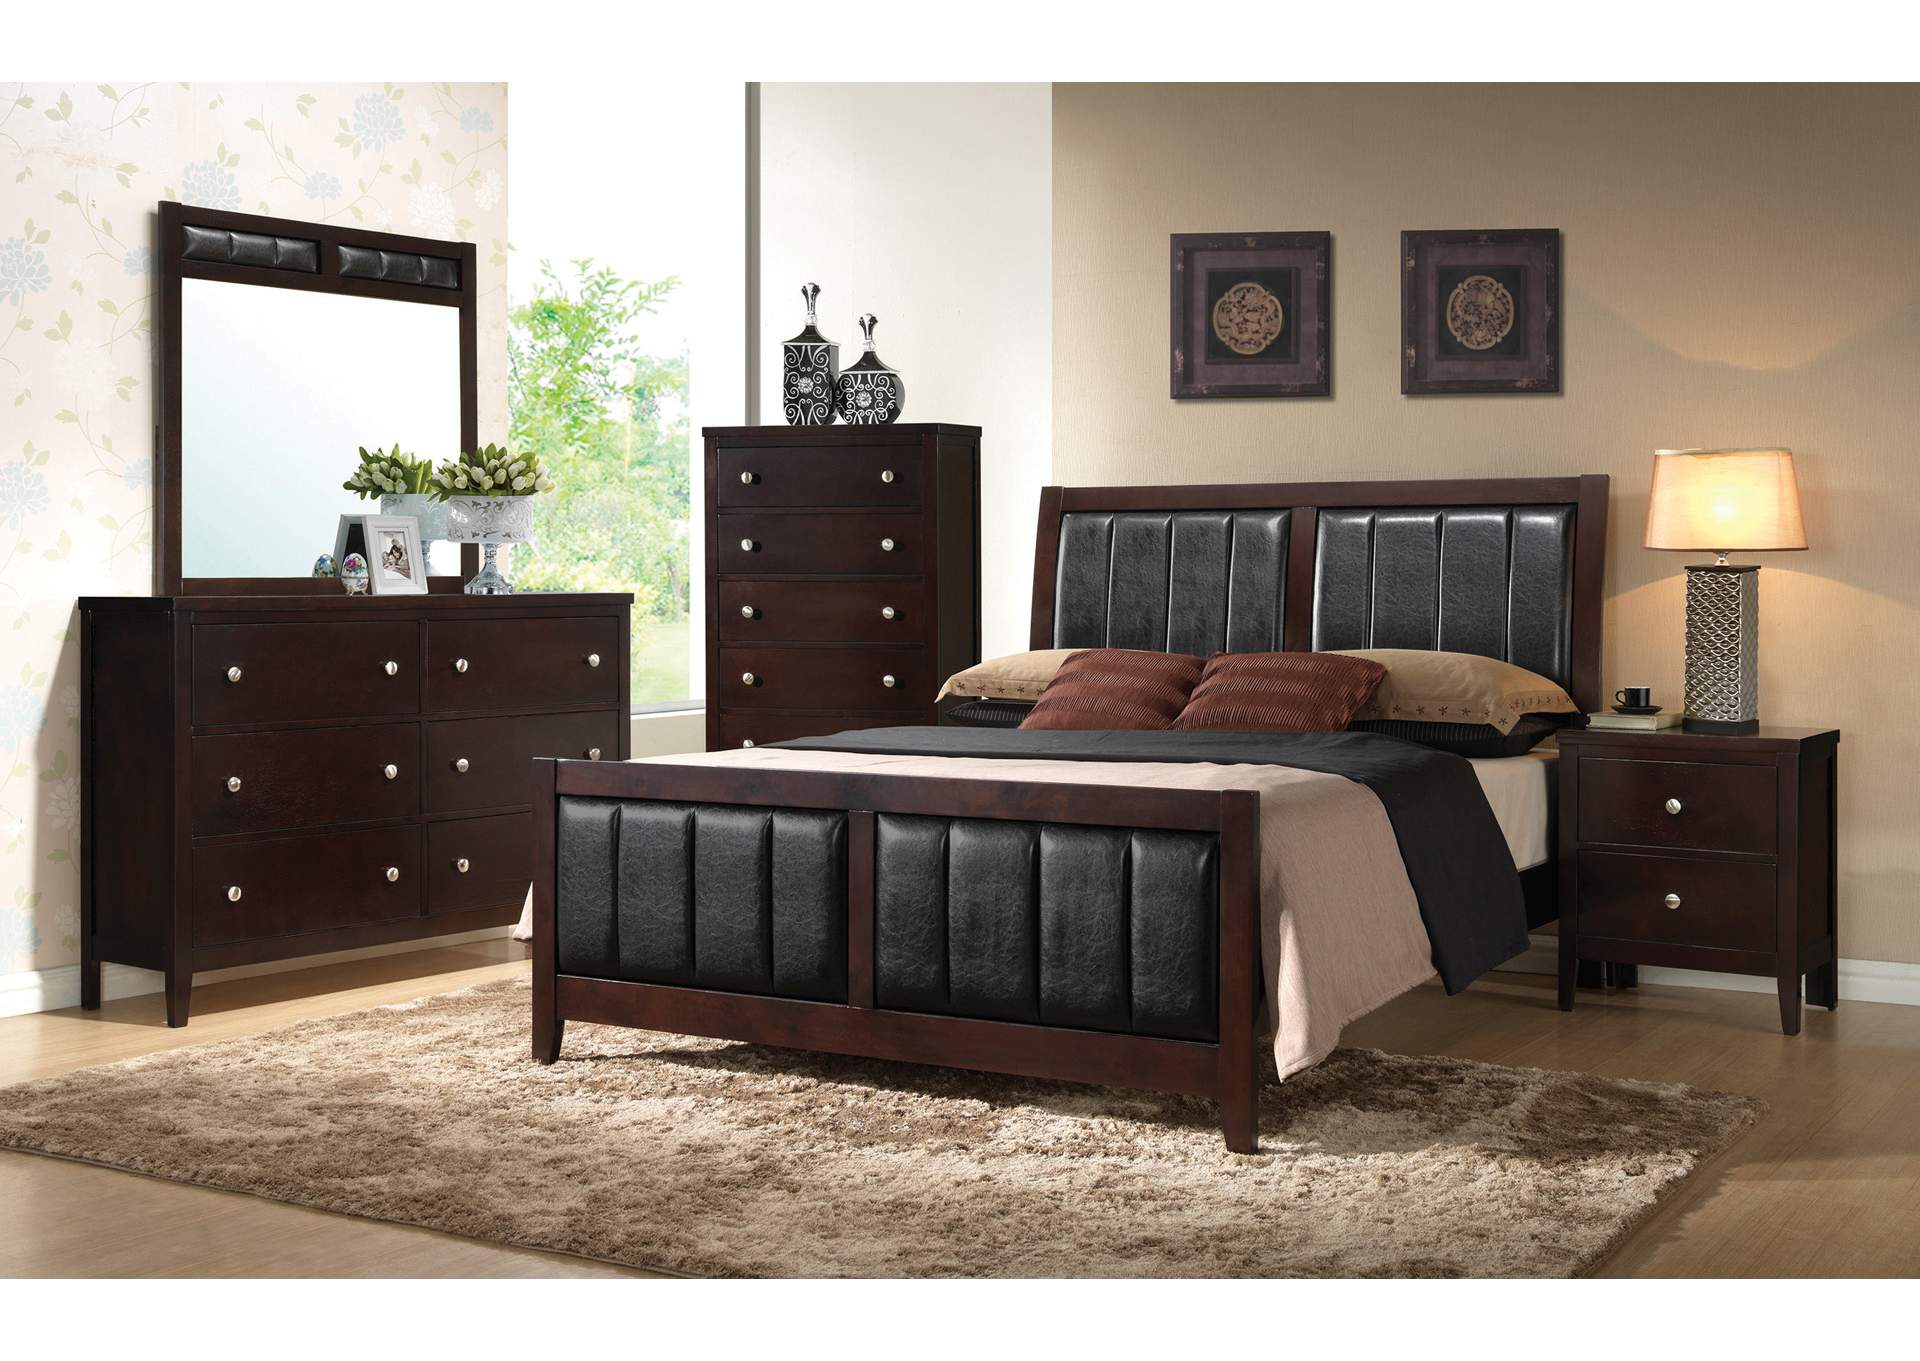 Full 4 Piece Bedroom Set National Furniture Outlet Westwego La